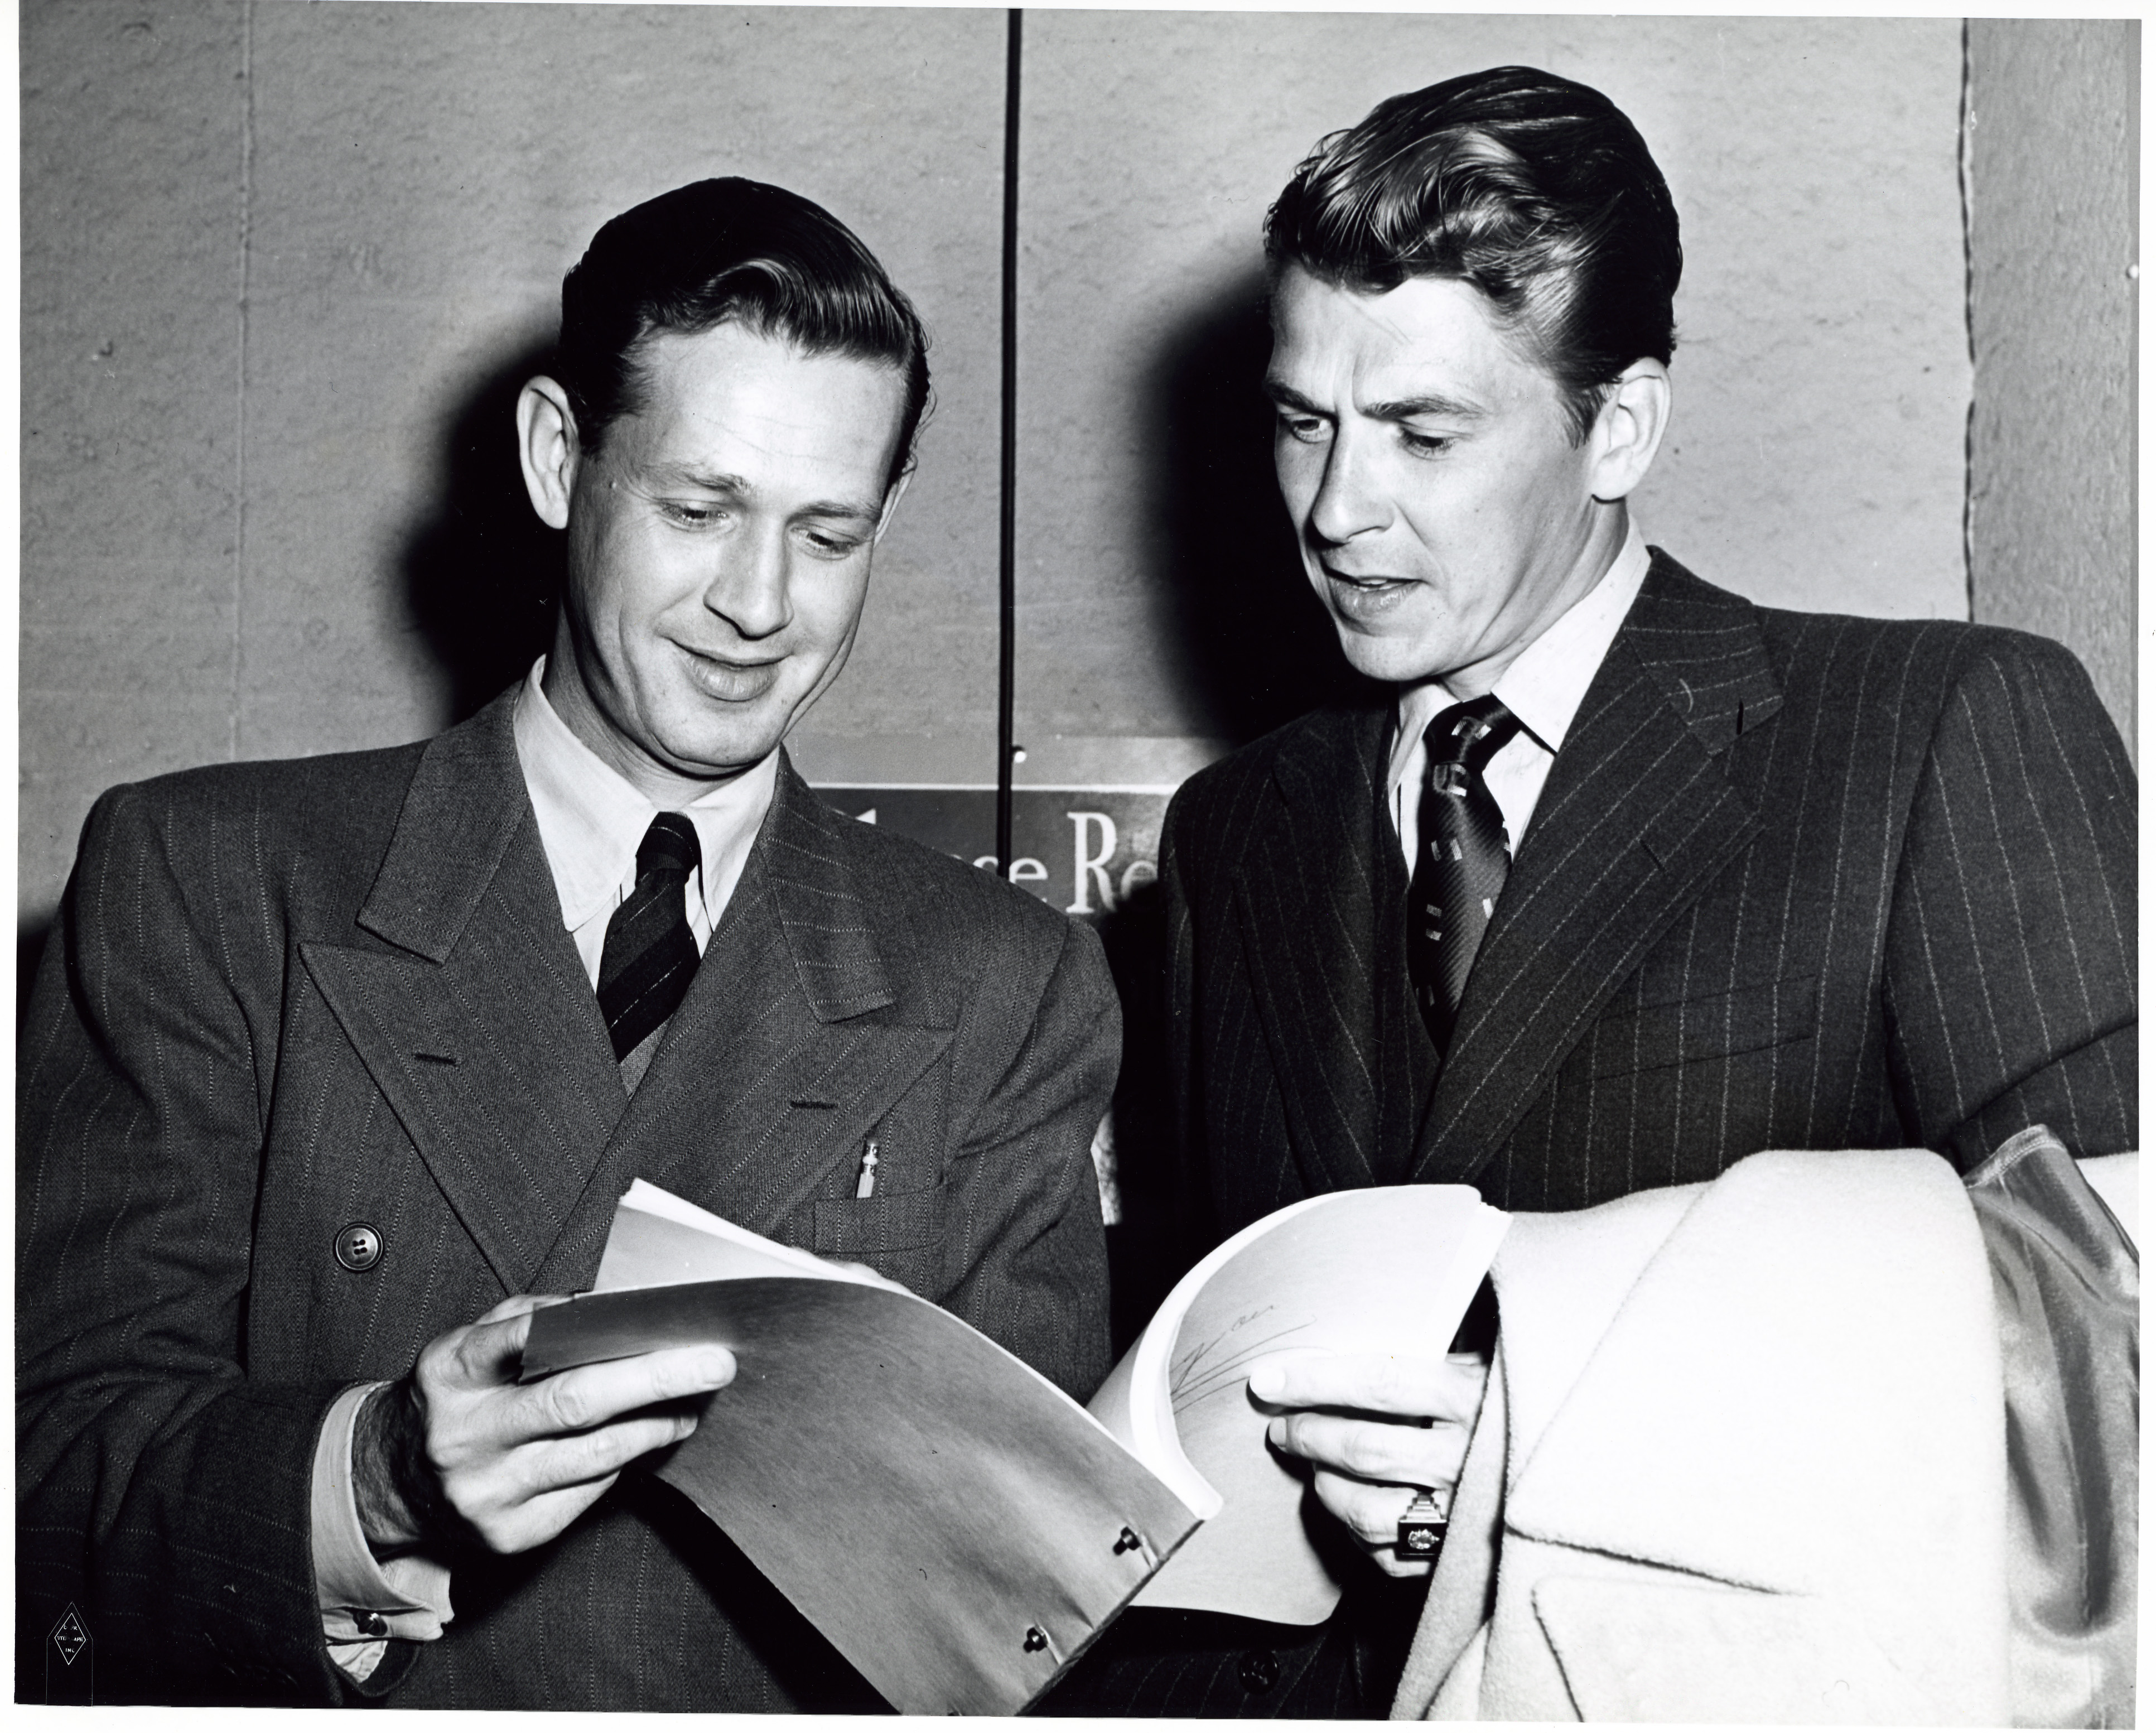 Ronald Reagan and Brother Neil Reagan (Moon) at KFWB Radio station